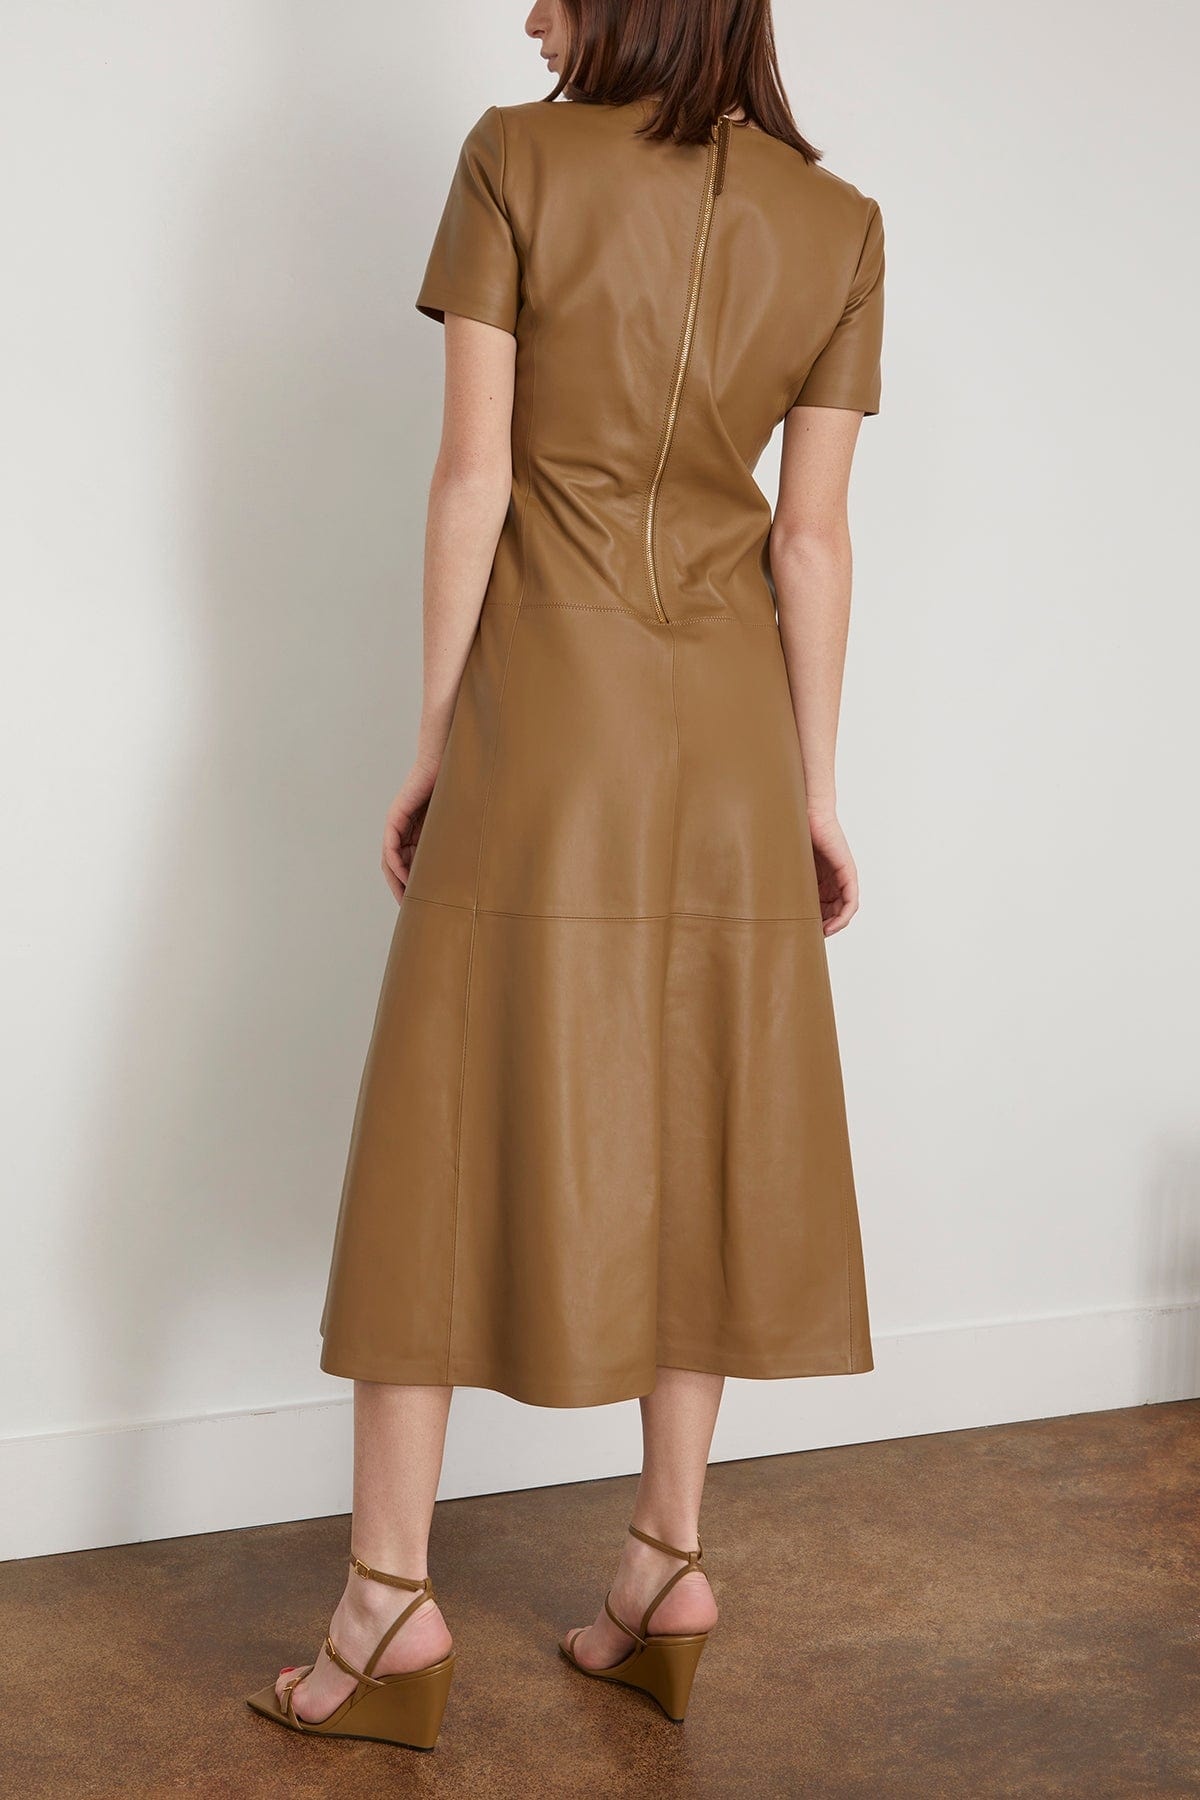 Sleek Statement Dress in Medium Olive - 4